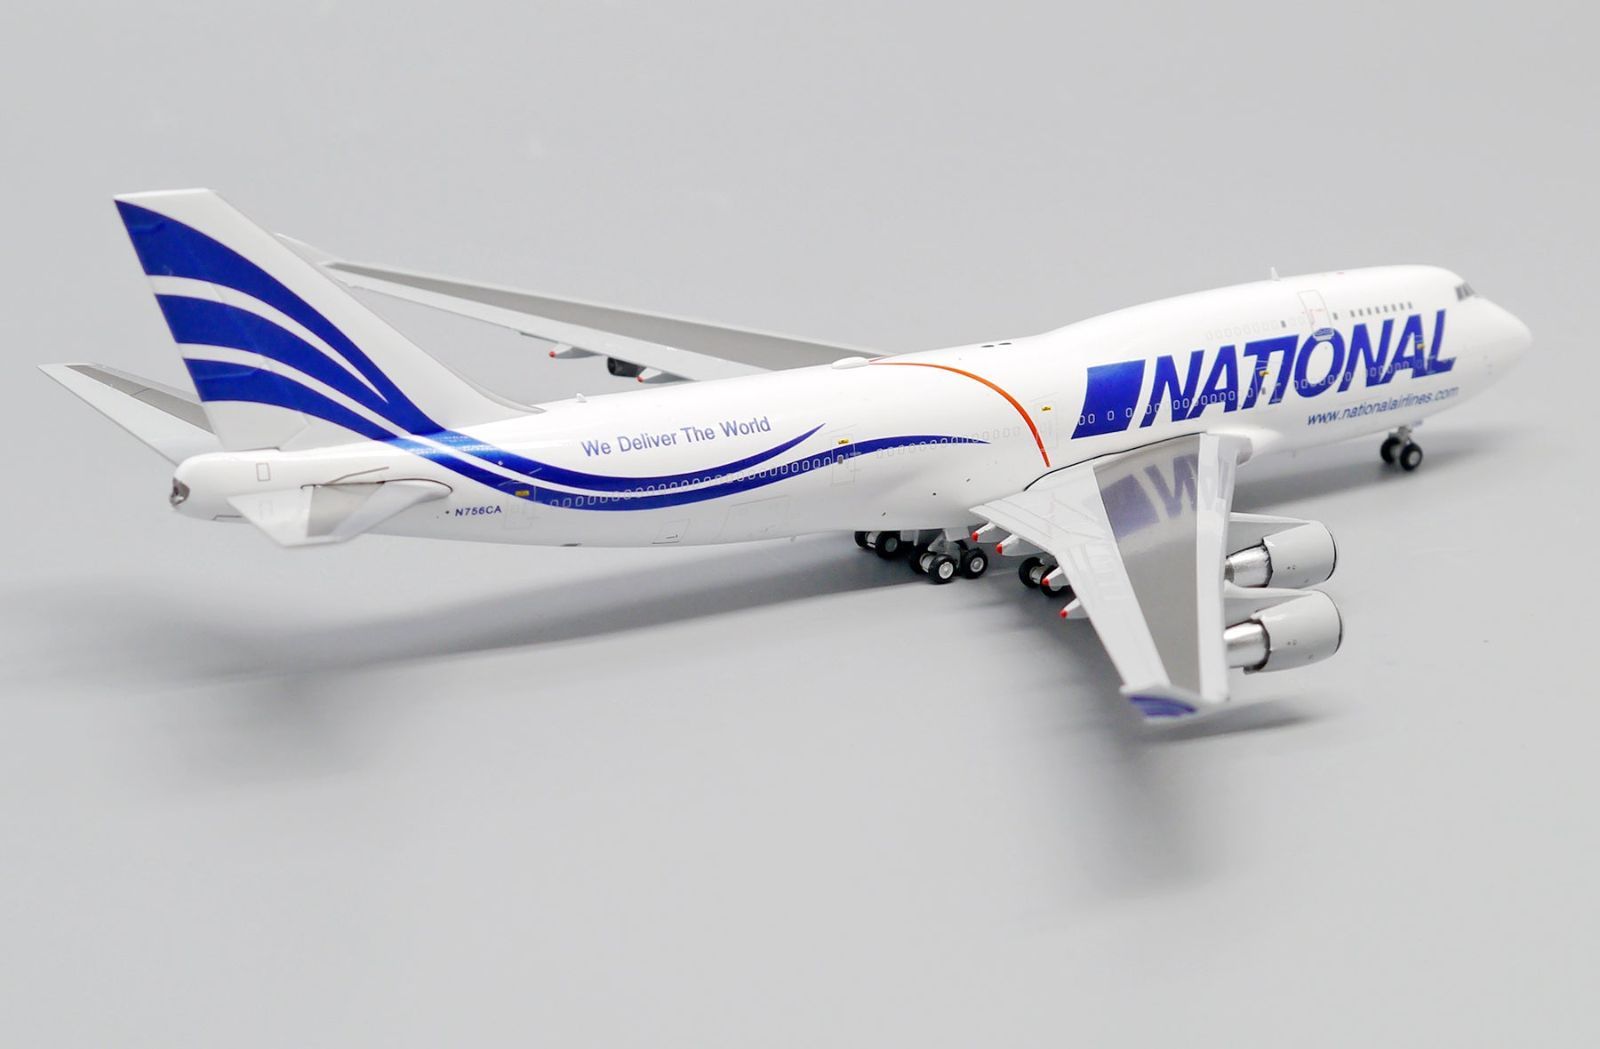 Jcwings ナショナルエアラインズ 747-400FN756CA 1/400